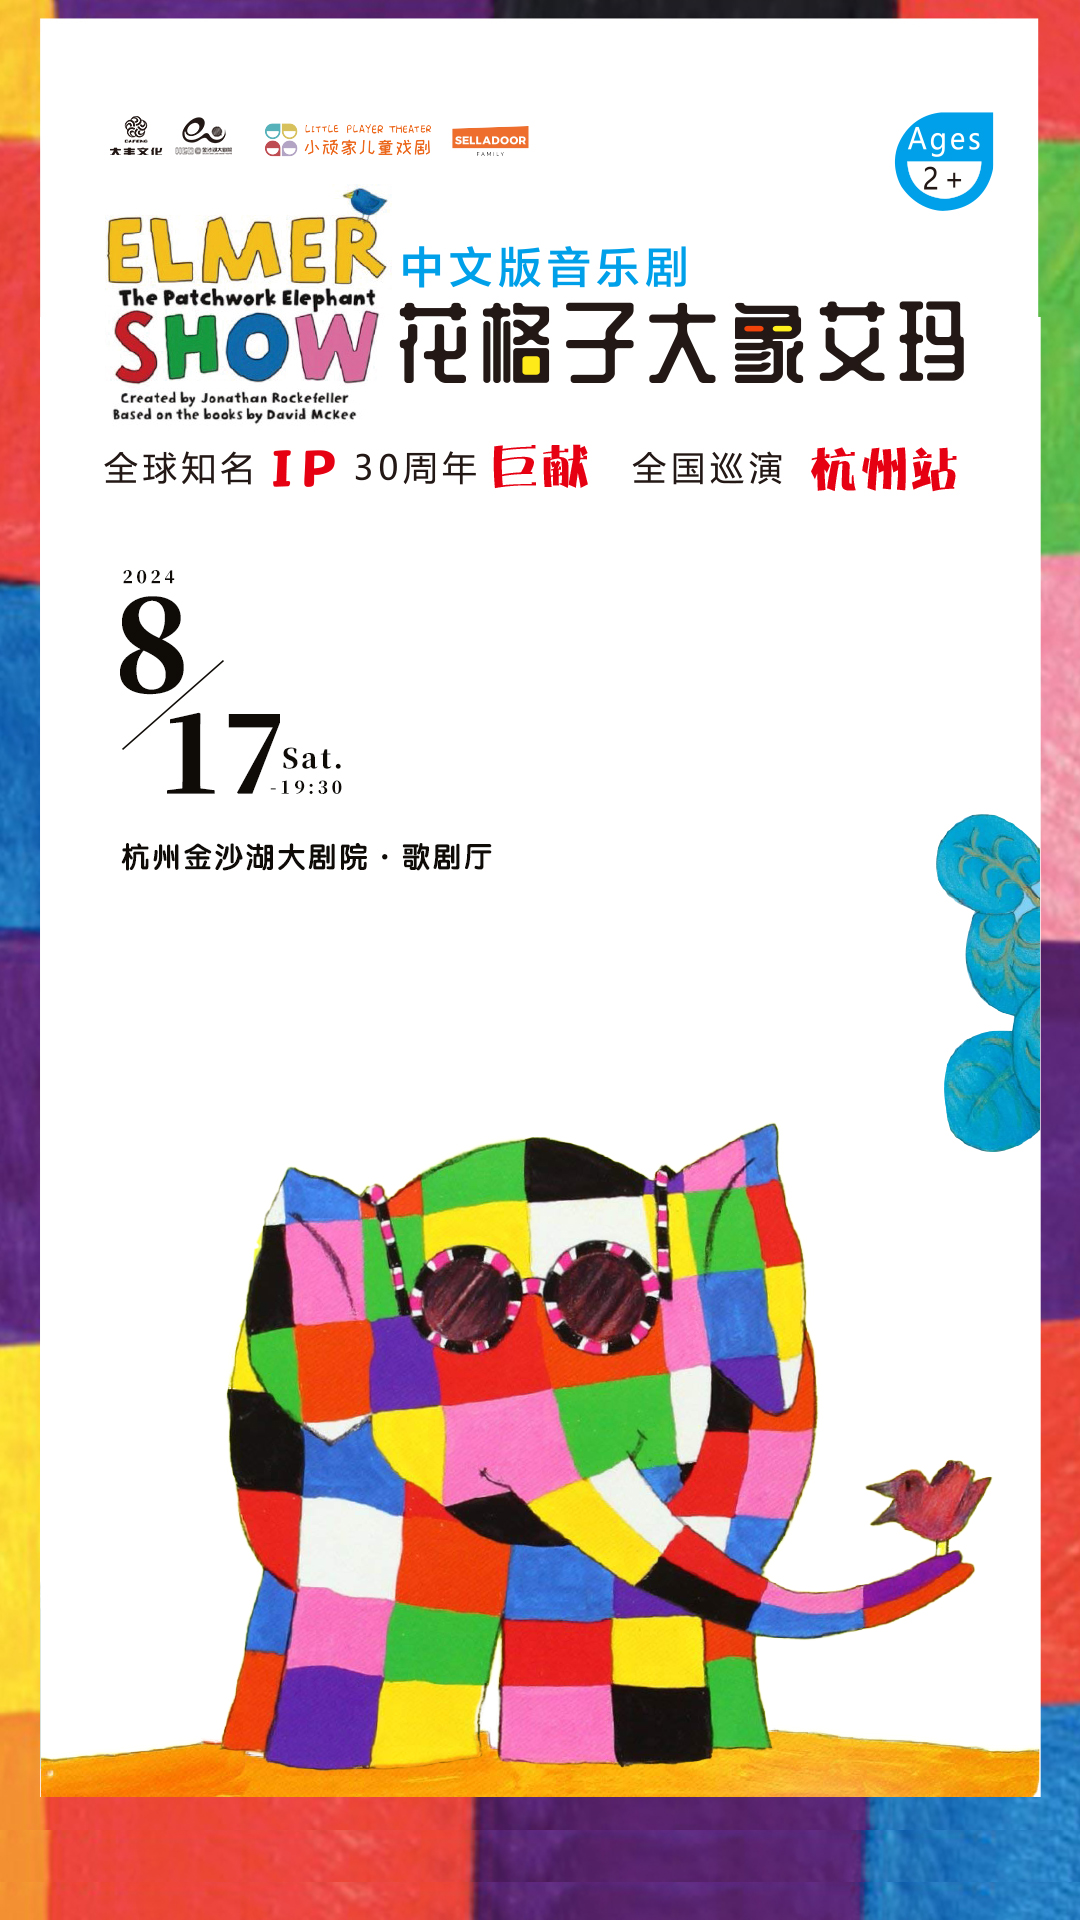 【杭州】经典绘本音乐剧《花格子大象艾玛》